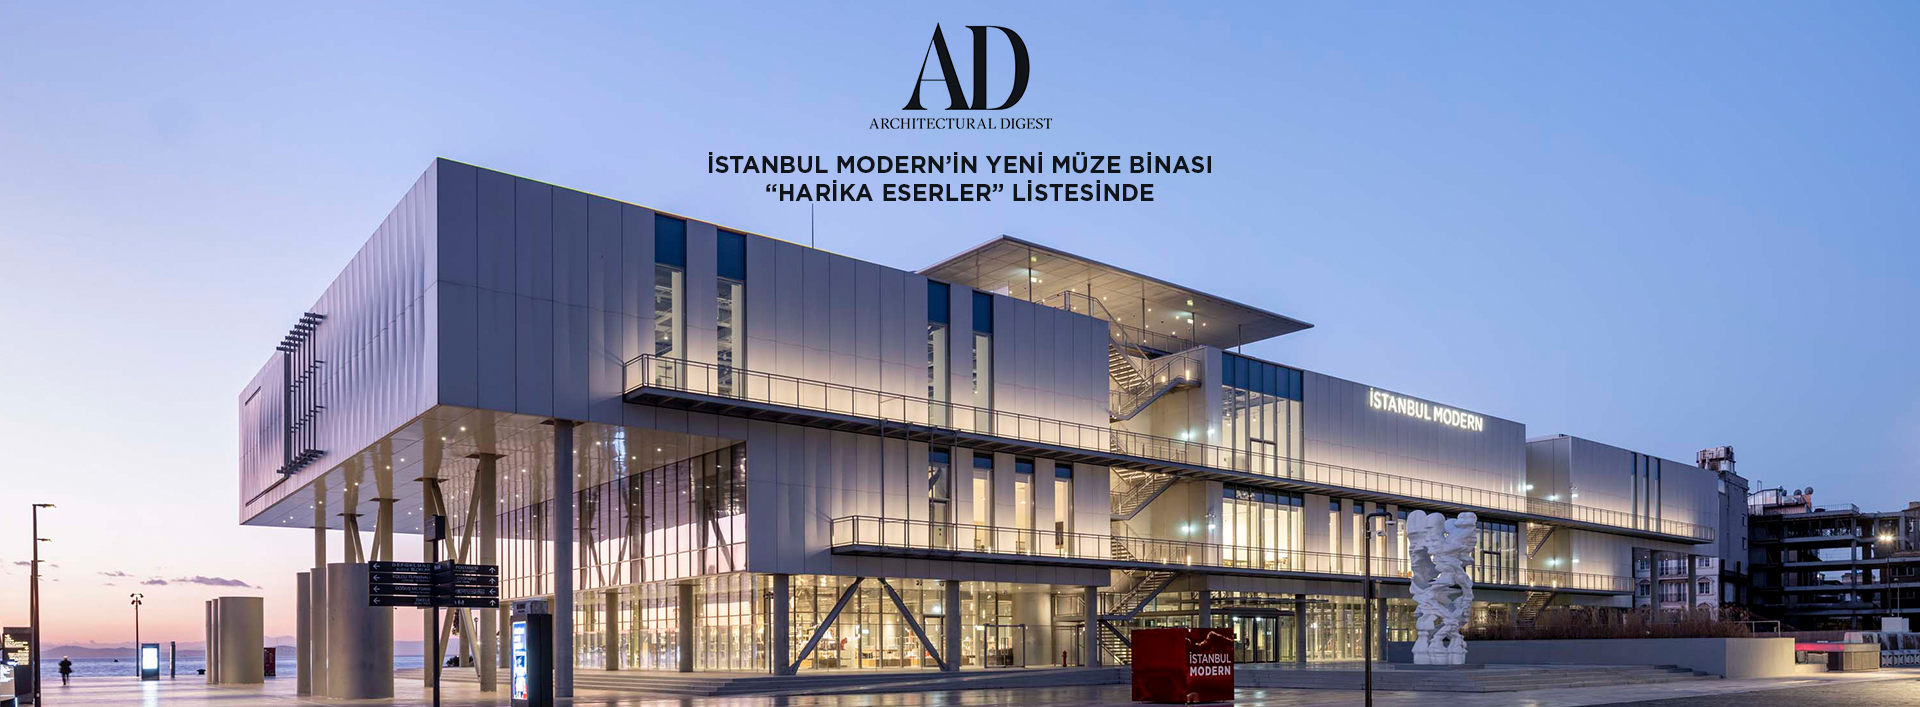 İstanbul Modern’in yeni binası “Harika Eserler” listesinde